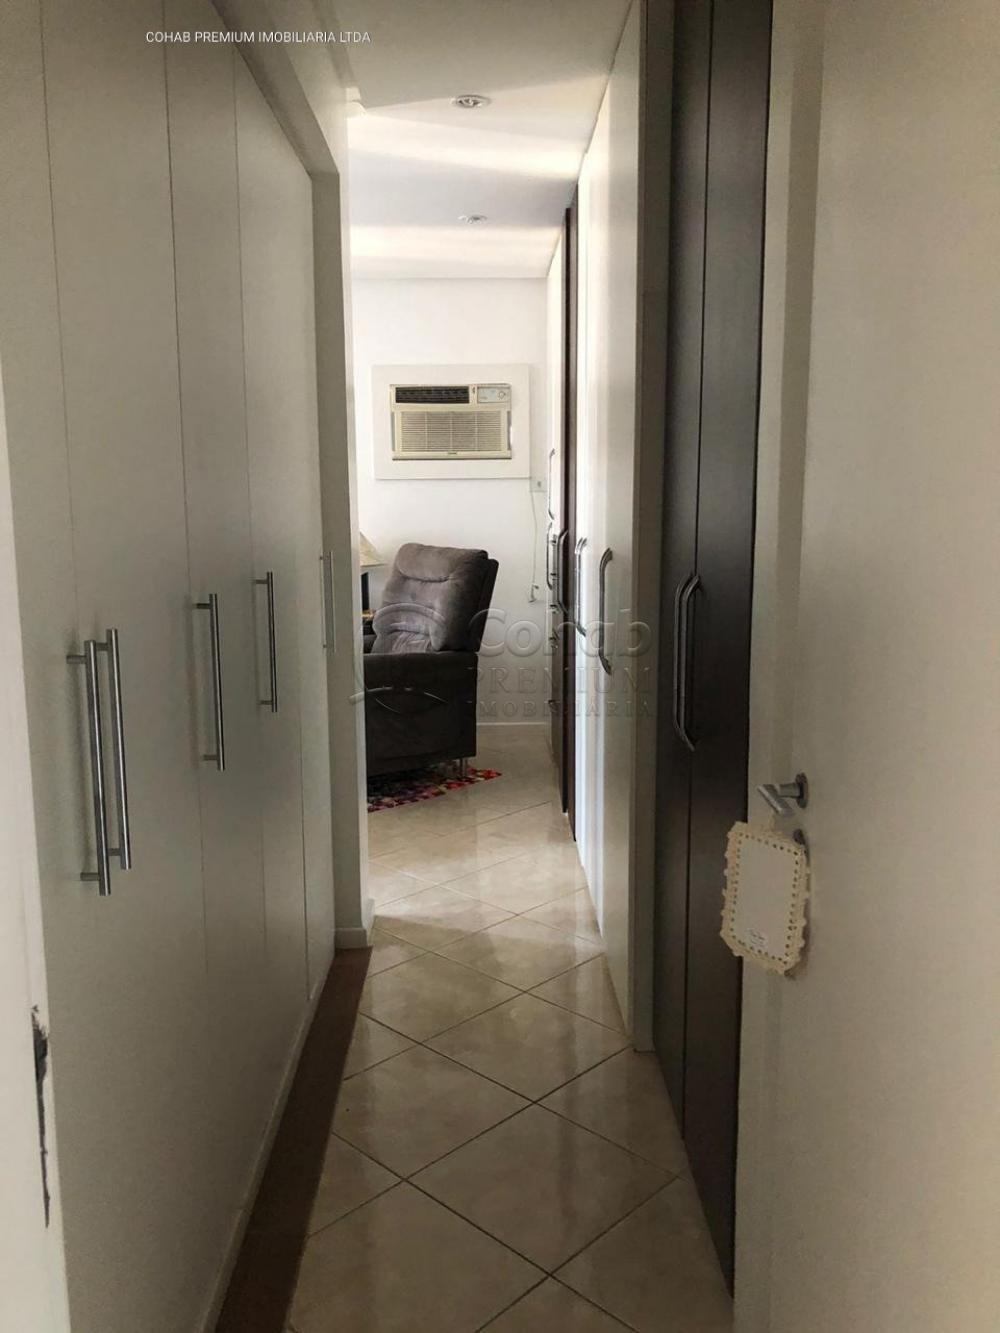 Comprar Apartamento / Cobertura em Aracaju R$ 1.200.000,00 - Foto 5